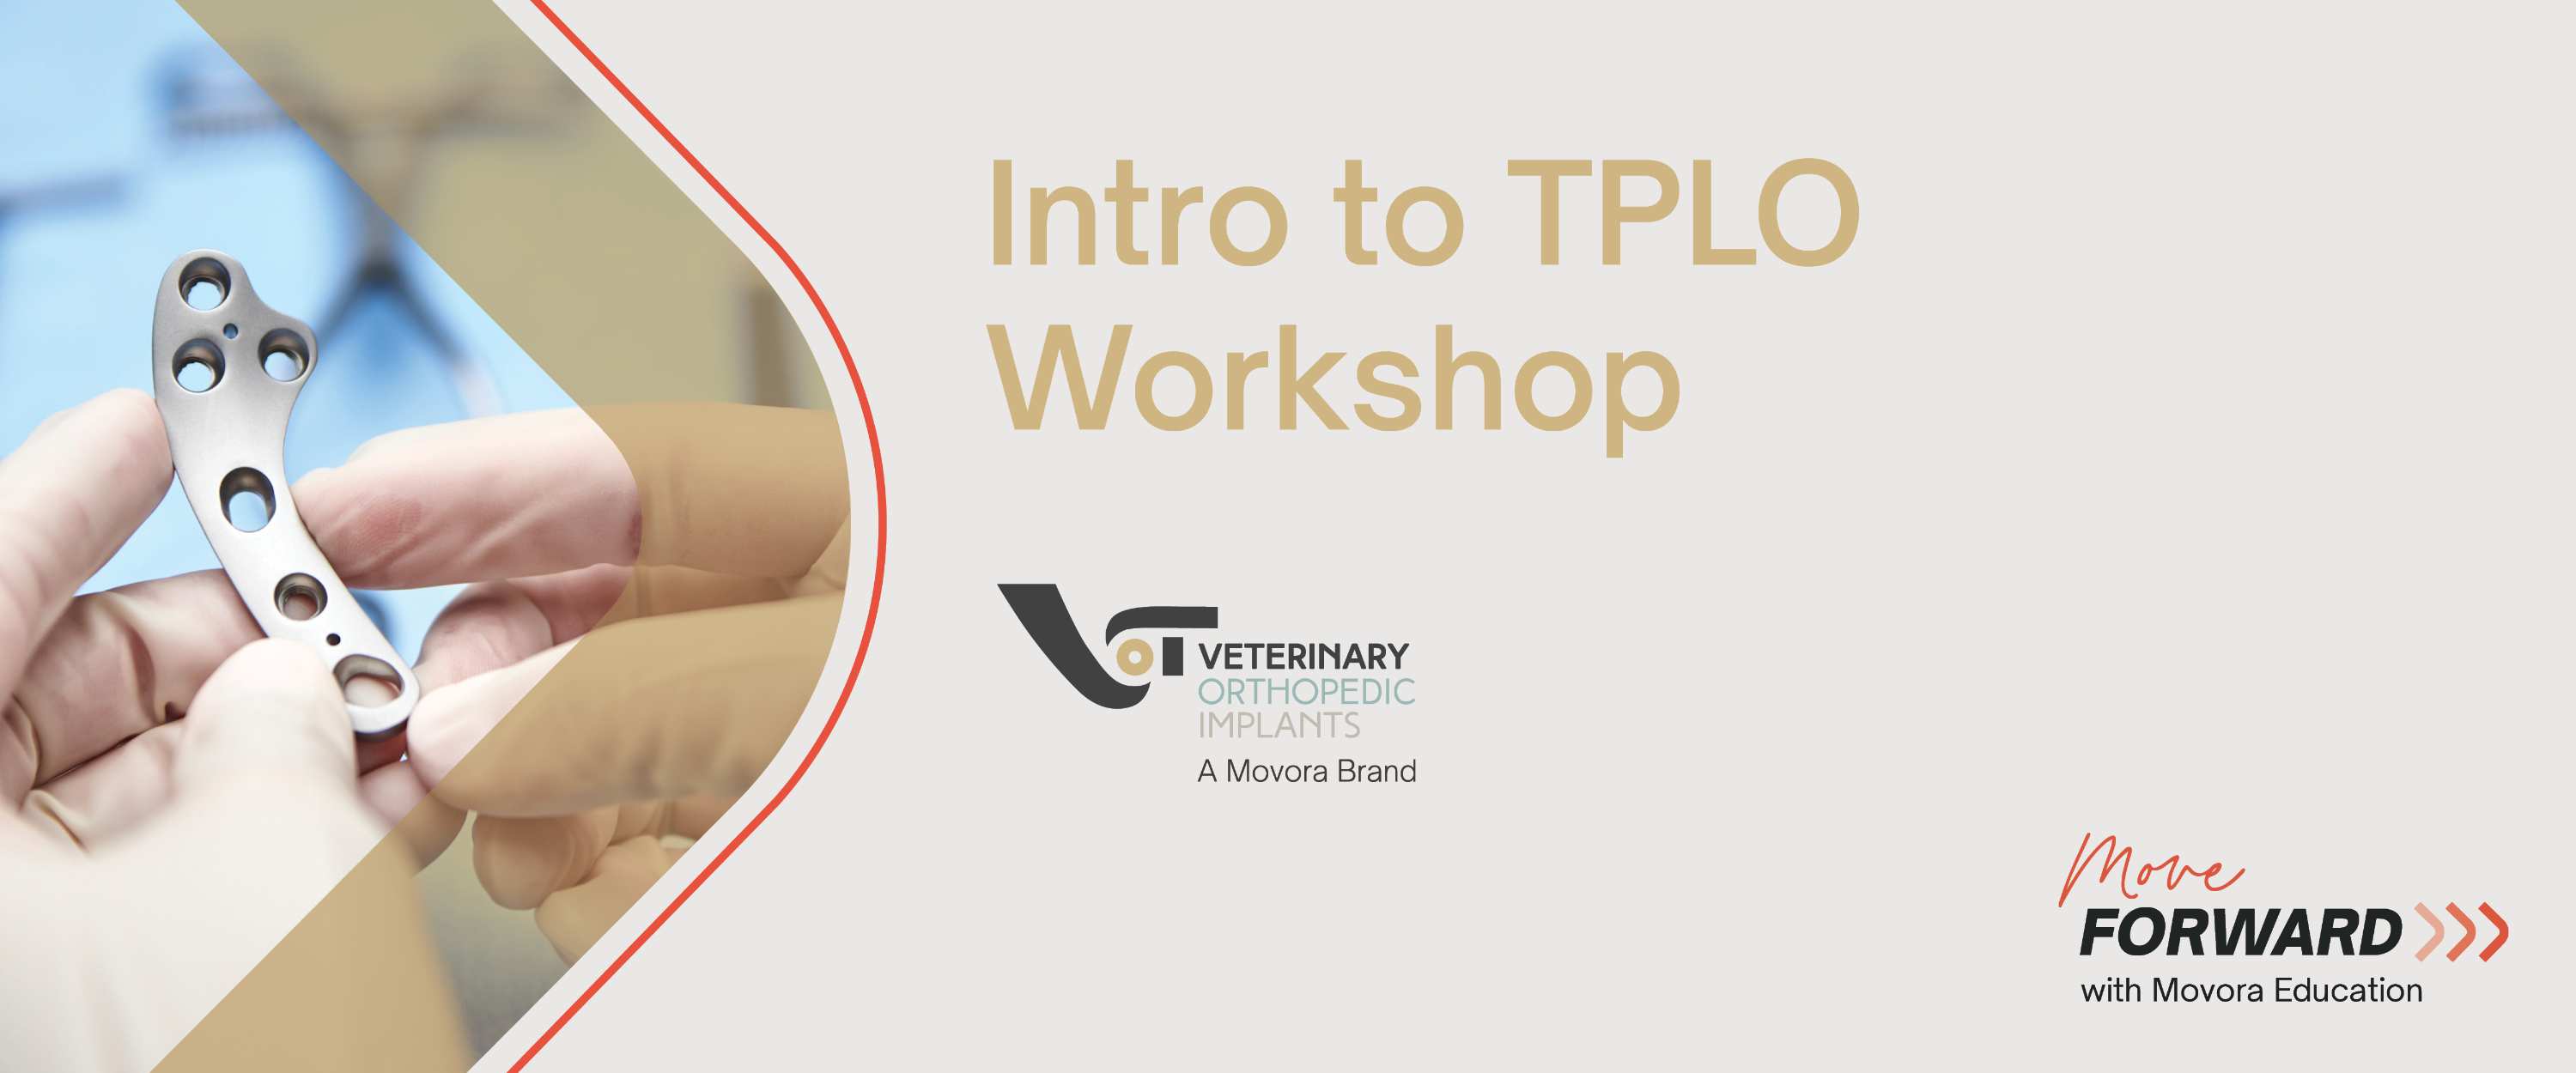 VOI Intro to TPLO Workshop banner